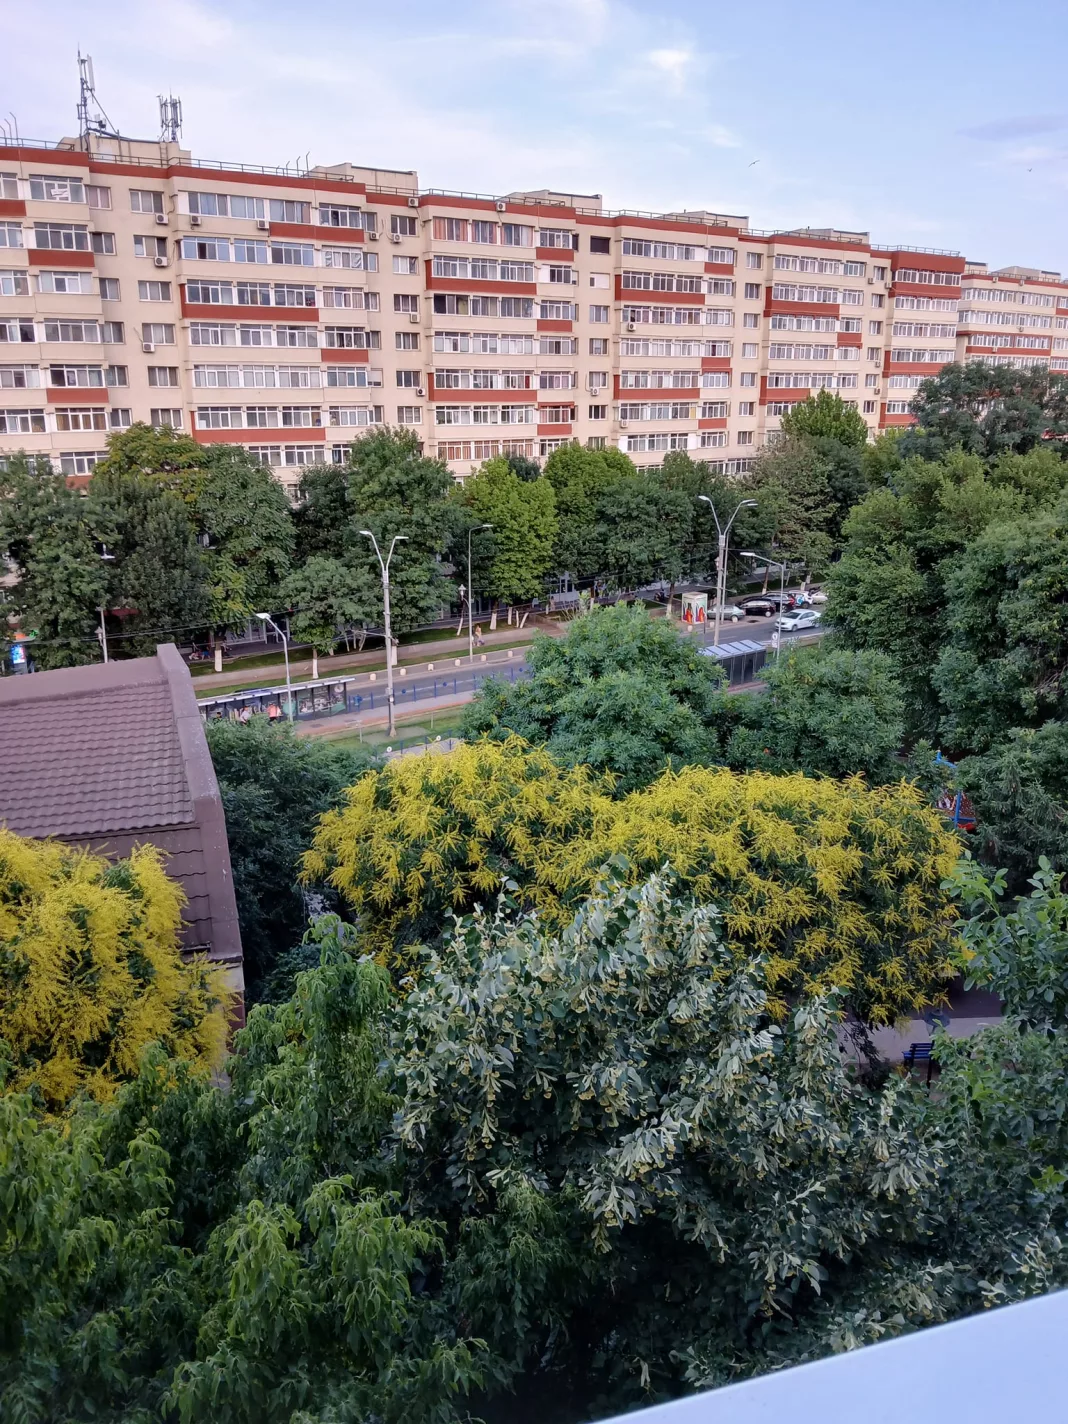 Peisaj urban cu cladiri înalte și copaci verzi